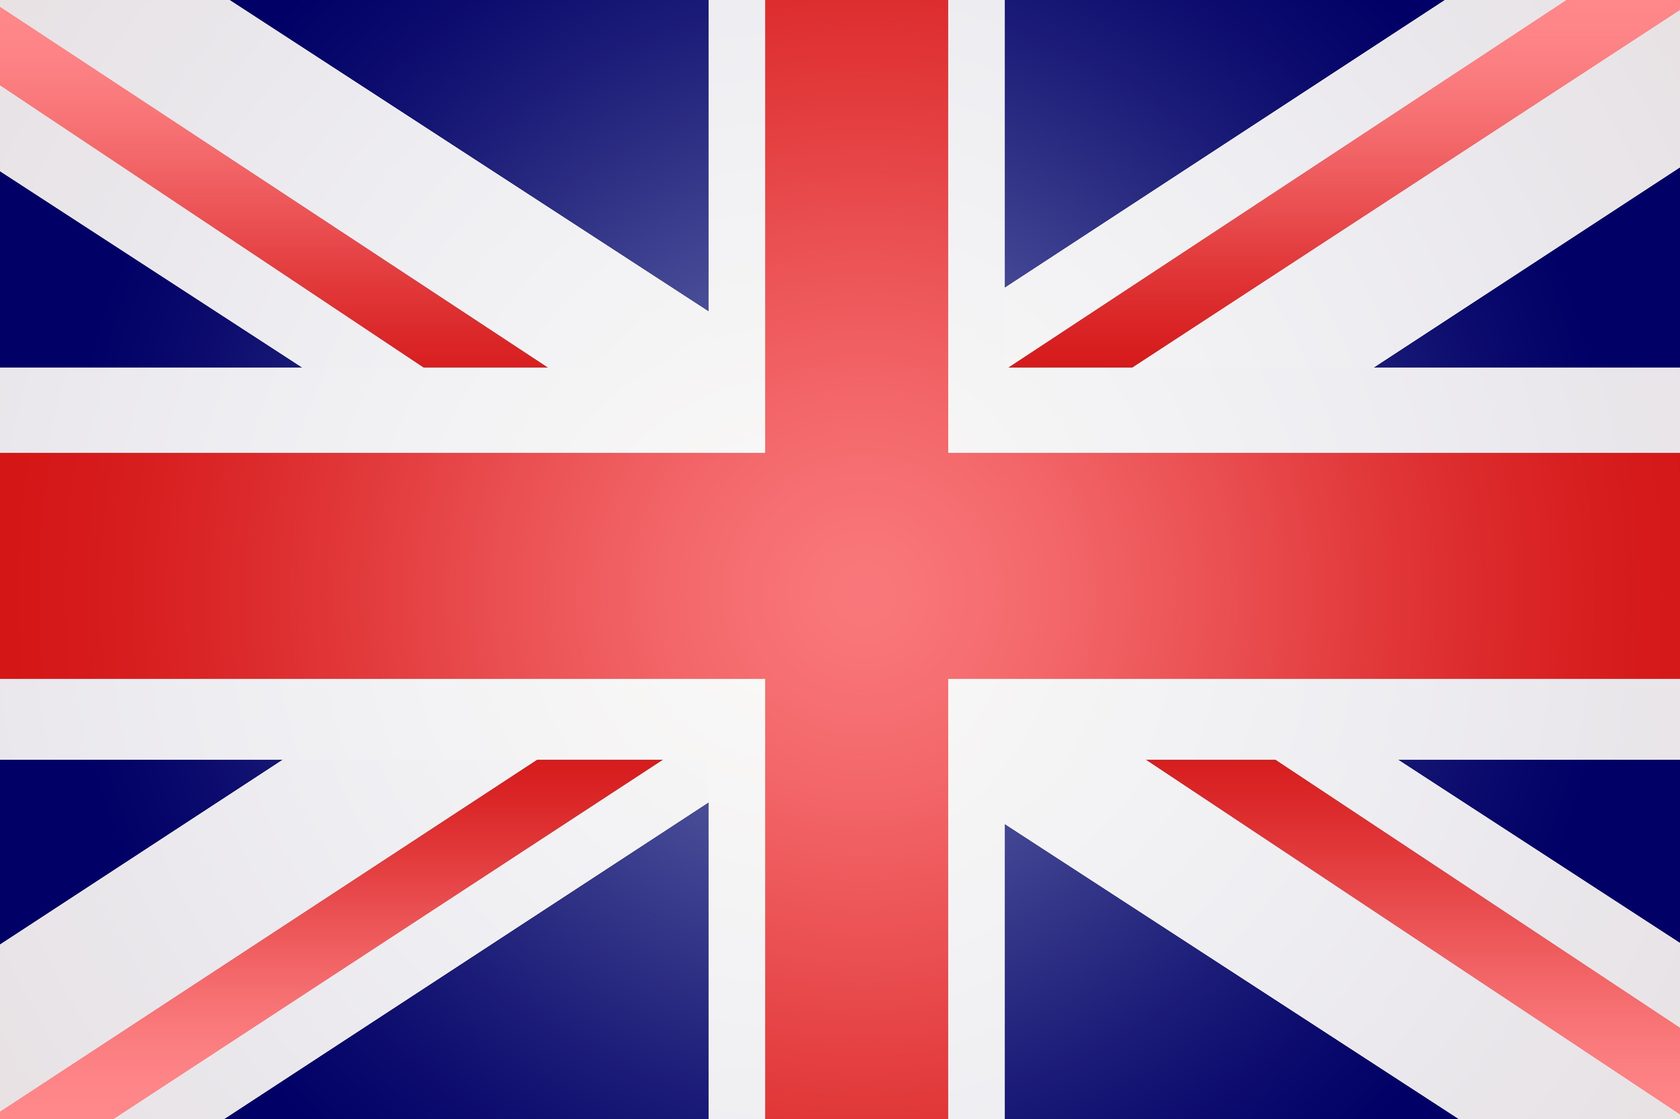 британский флаг фото в хорошем качестве